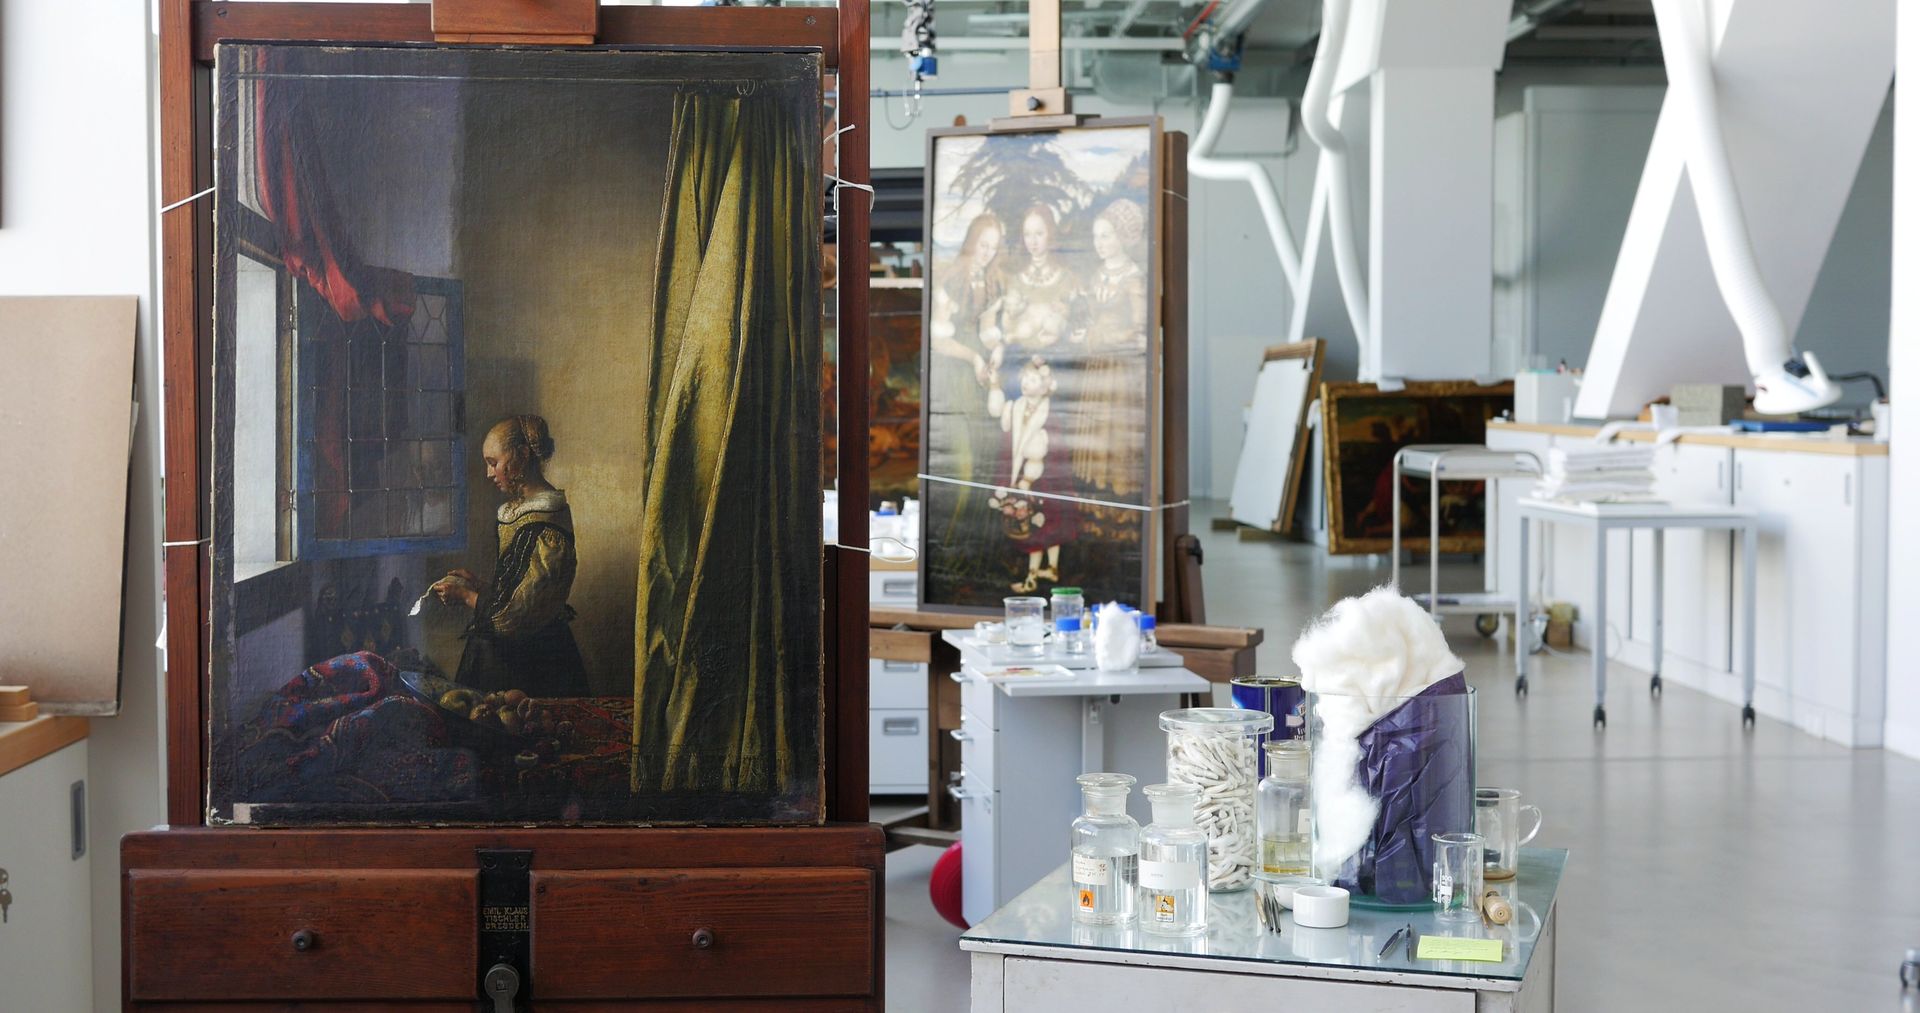 德国德累斯顿收藏馆所藏维米尔《窗前读信的少女》在修复实验室中